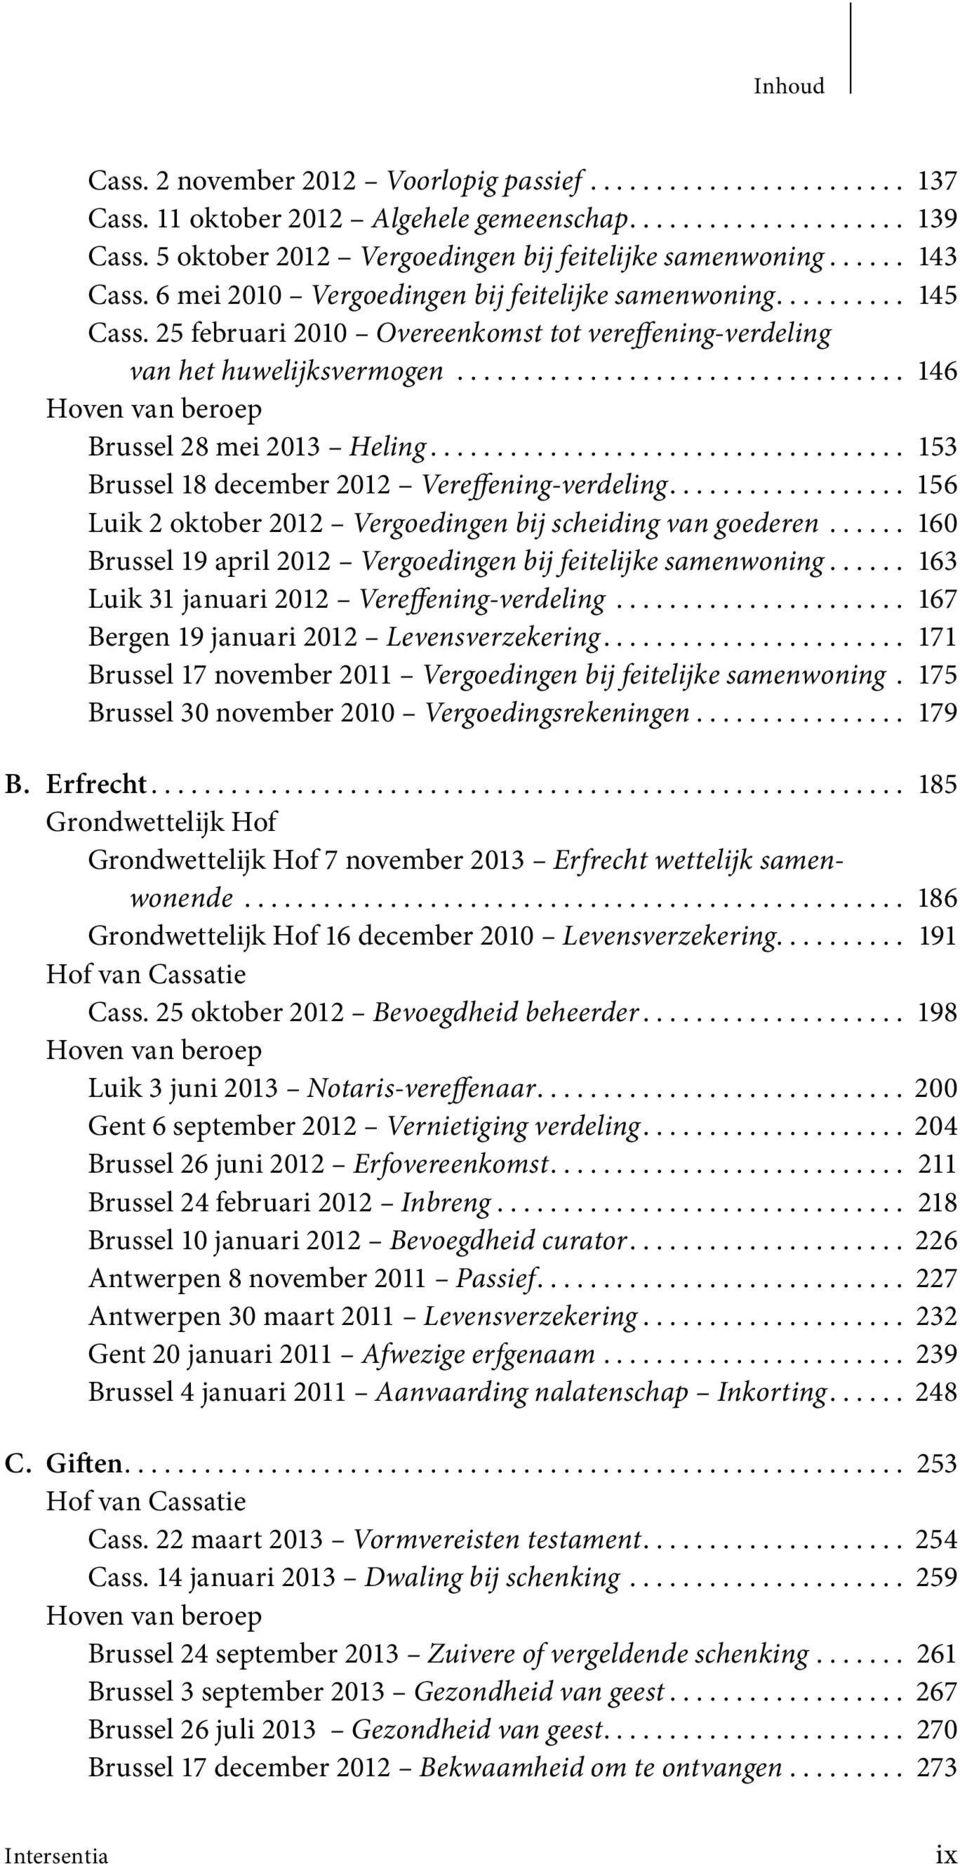 25 februari 2010 Overeenkomst tot vereffening-verdeling van het huwelijksvermogen.................................. 146 Brussel 28 mei 2013 Heling.................................... 153 Brussel 18 december 2012 Vereffening-verdeling.